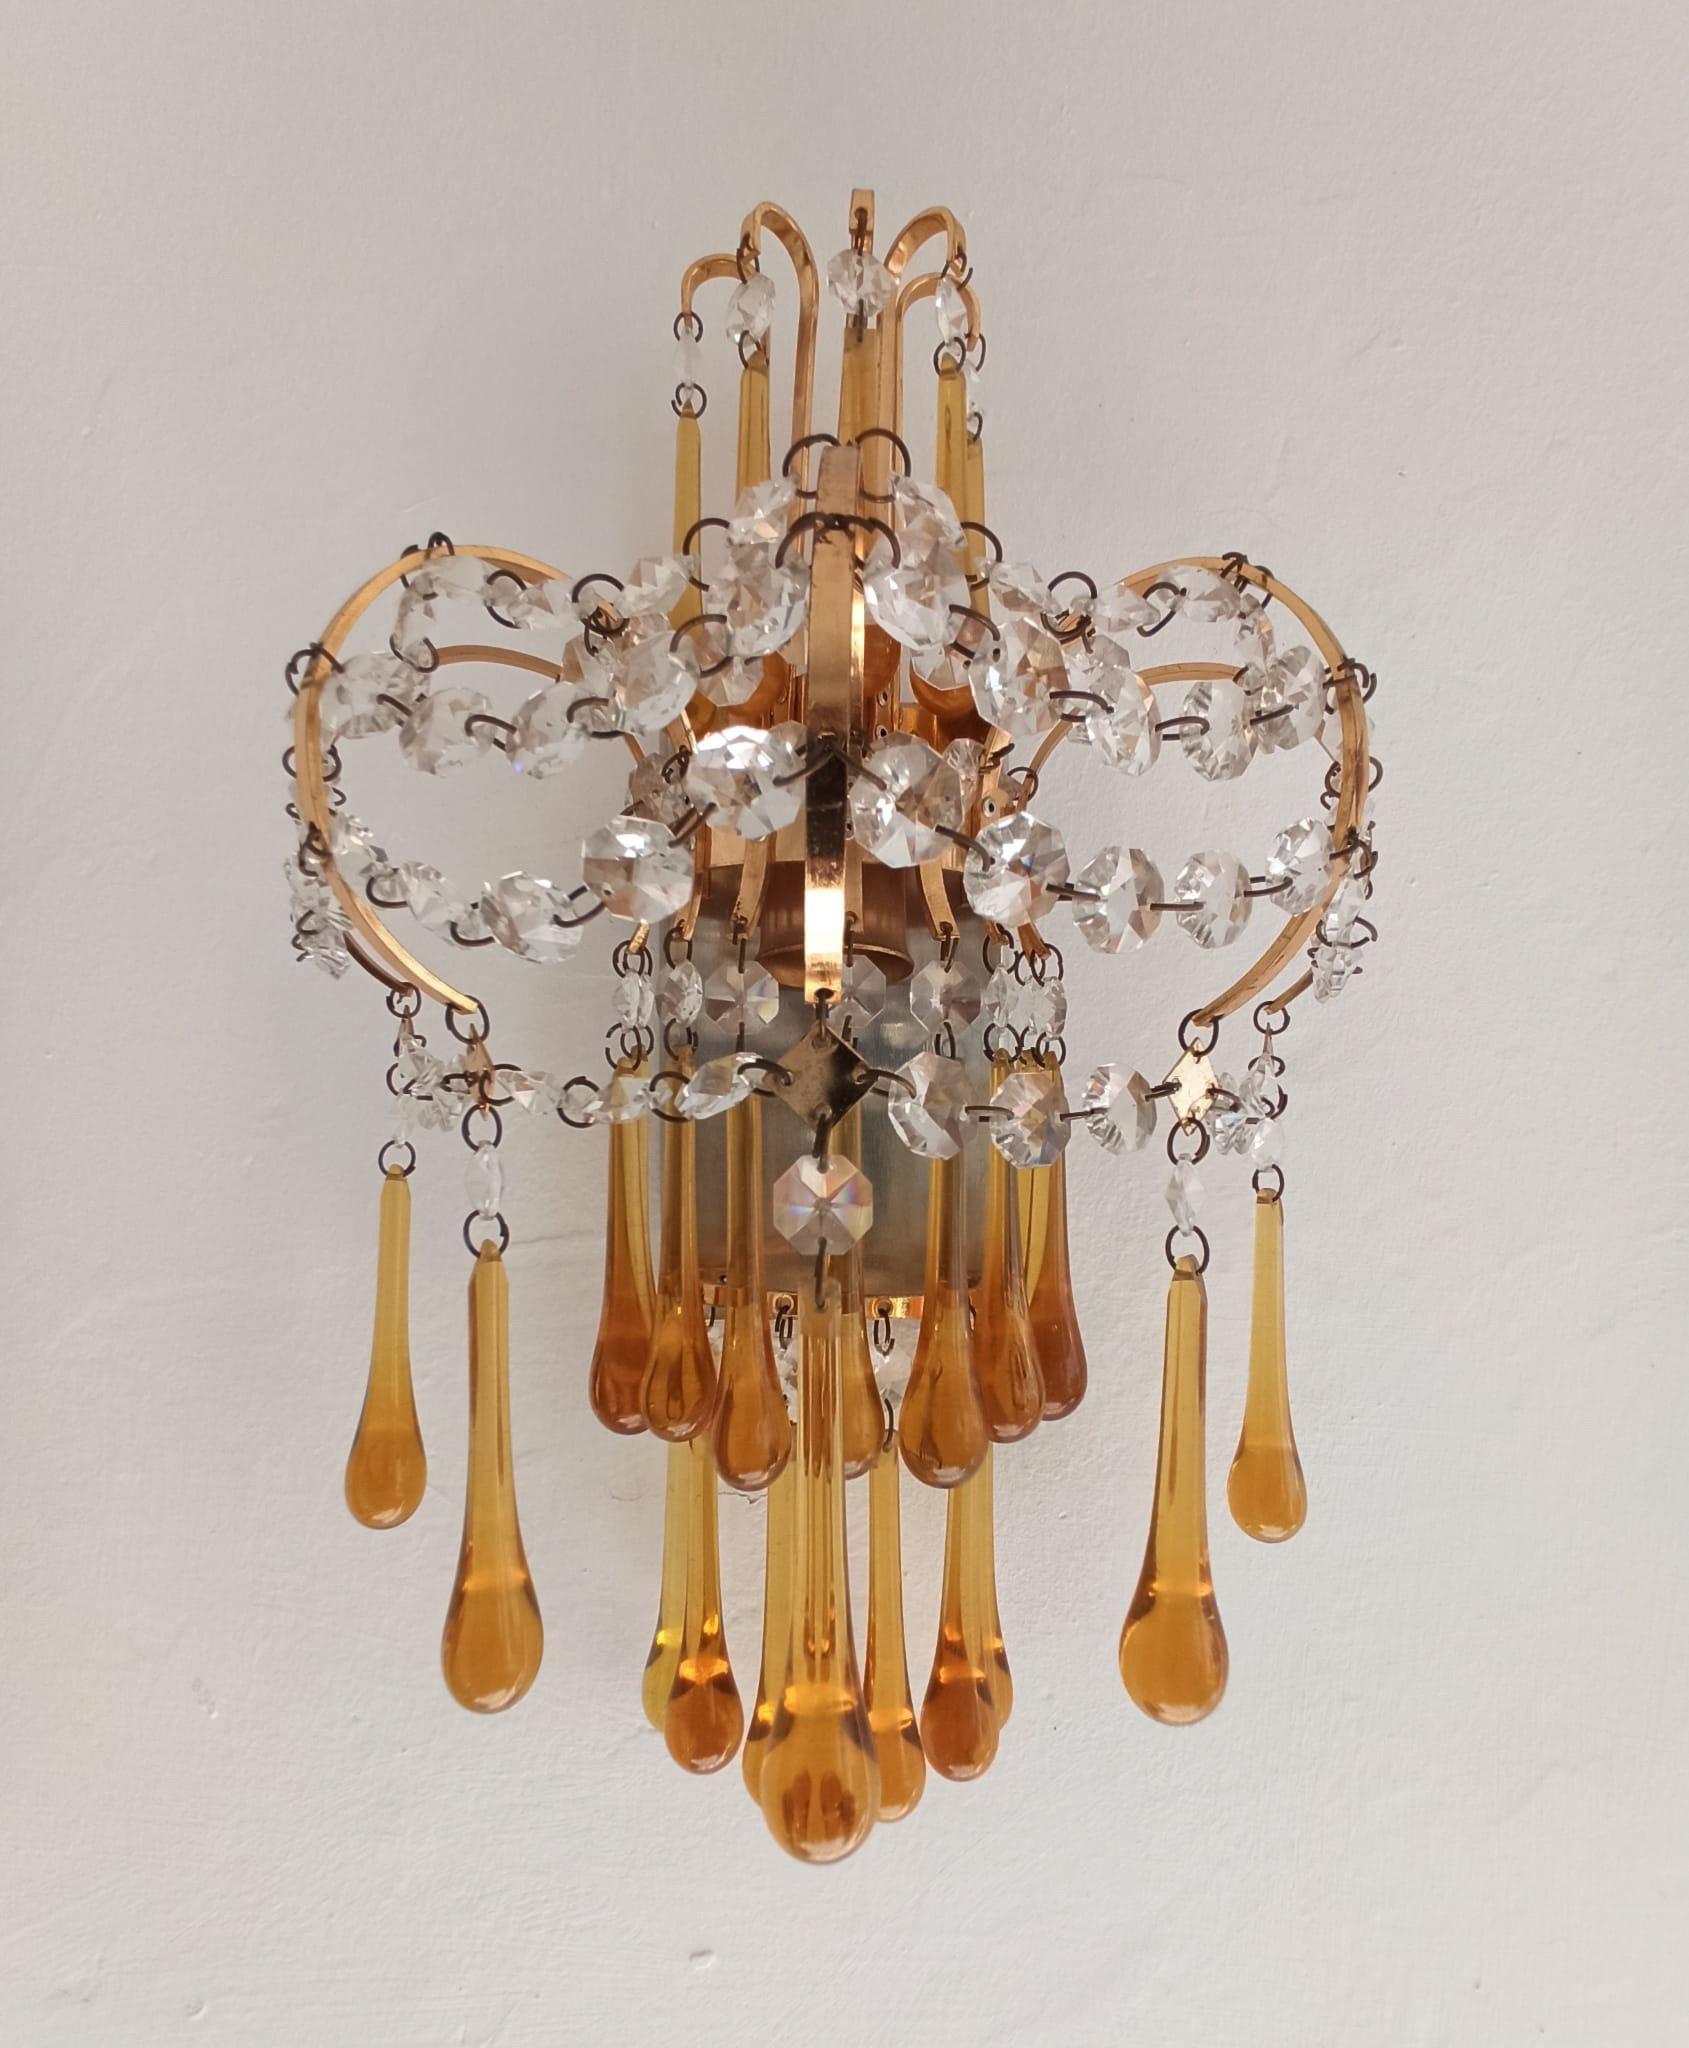 Ein wunderschönes originales italienisches Paar Wandlampen aus Messing und Murano-Glas, entworfen von Paolo Venini in den 1960er Jahren, das oben von einer halbmondförmigen Krone aus gebogenen Messingstäben mit bernsteinfarbenen Glastropfen an den